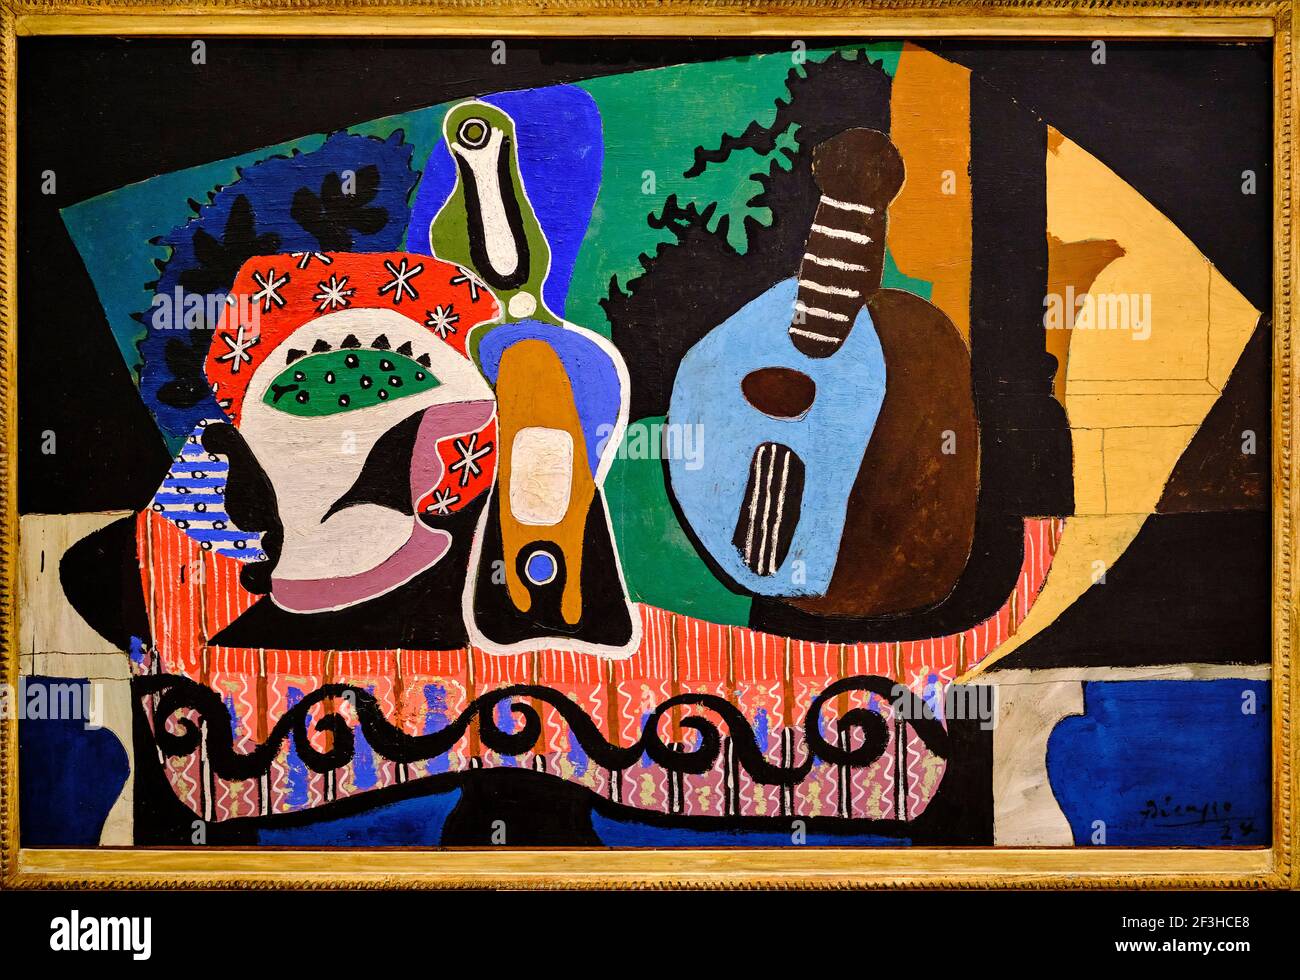 Repubblica d'Irlanda; Dublino, National Gallery of Ireland, Pablo Picasso, Still Life with a Mandolin, 1924 Foto Stock